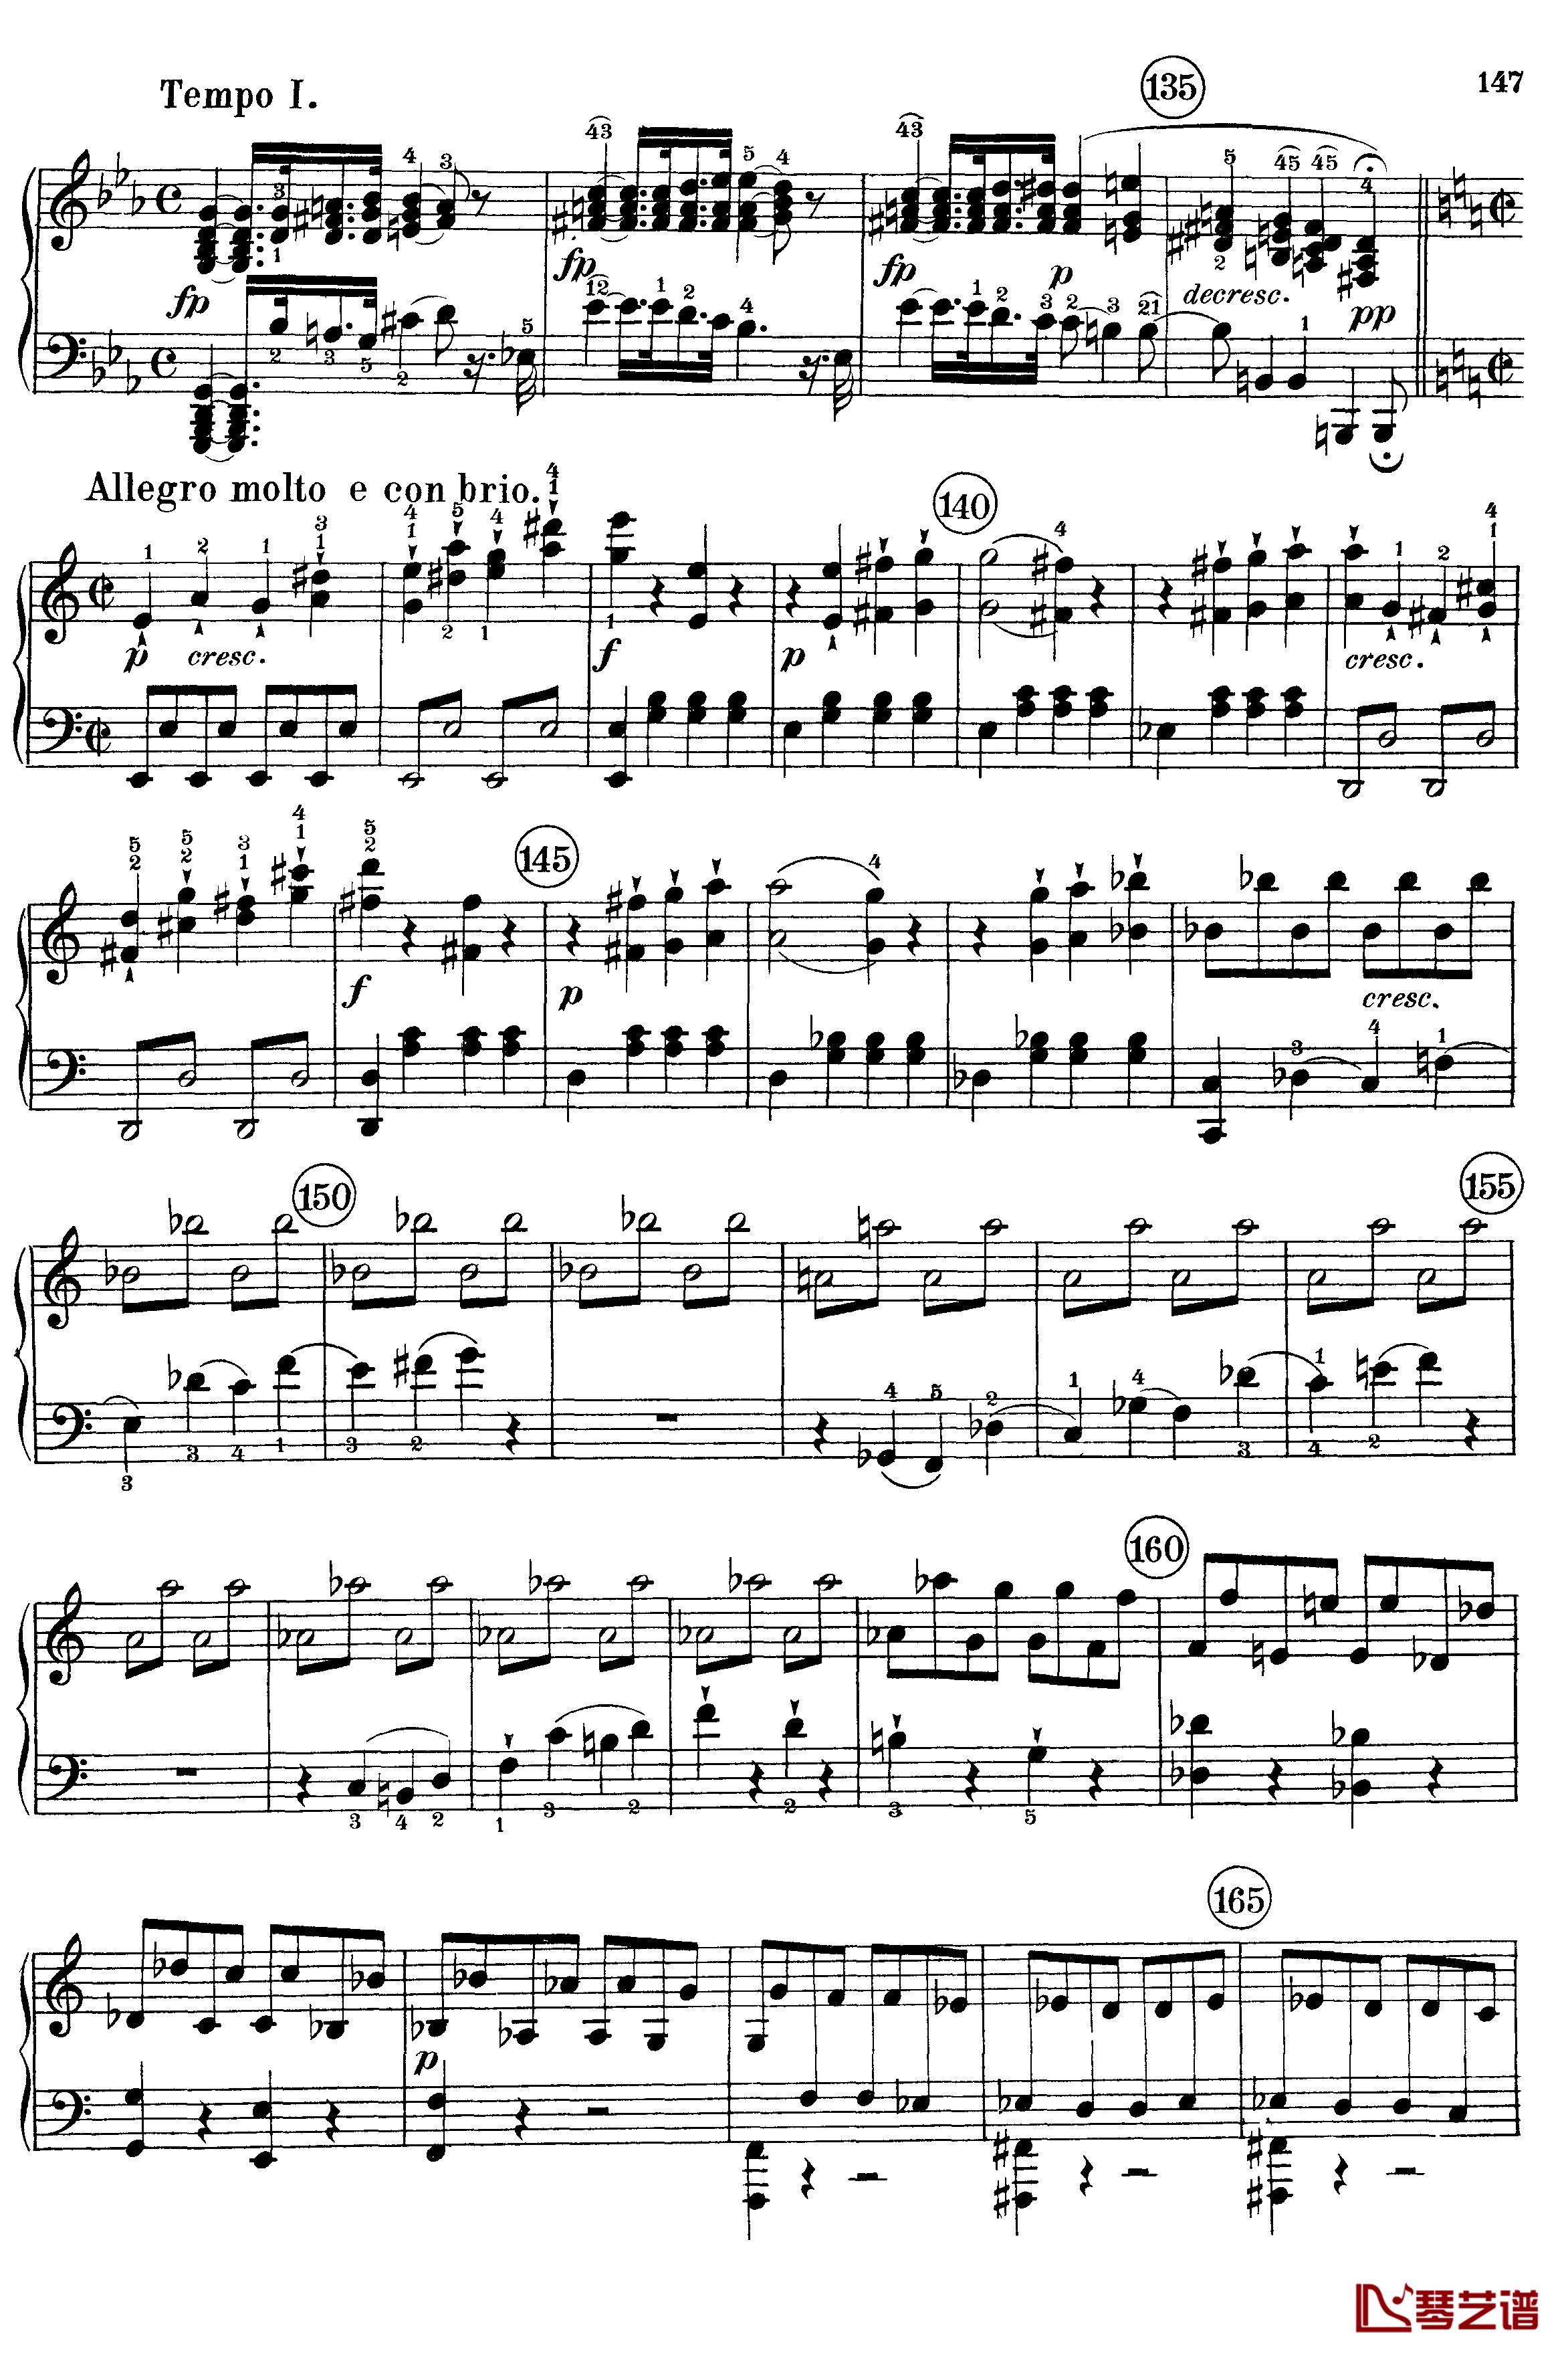 悲怆钢琴谱-c小调第八号钢琴奏鸣曲-全乐章-带指法版-贝多芬-beethoven5